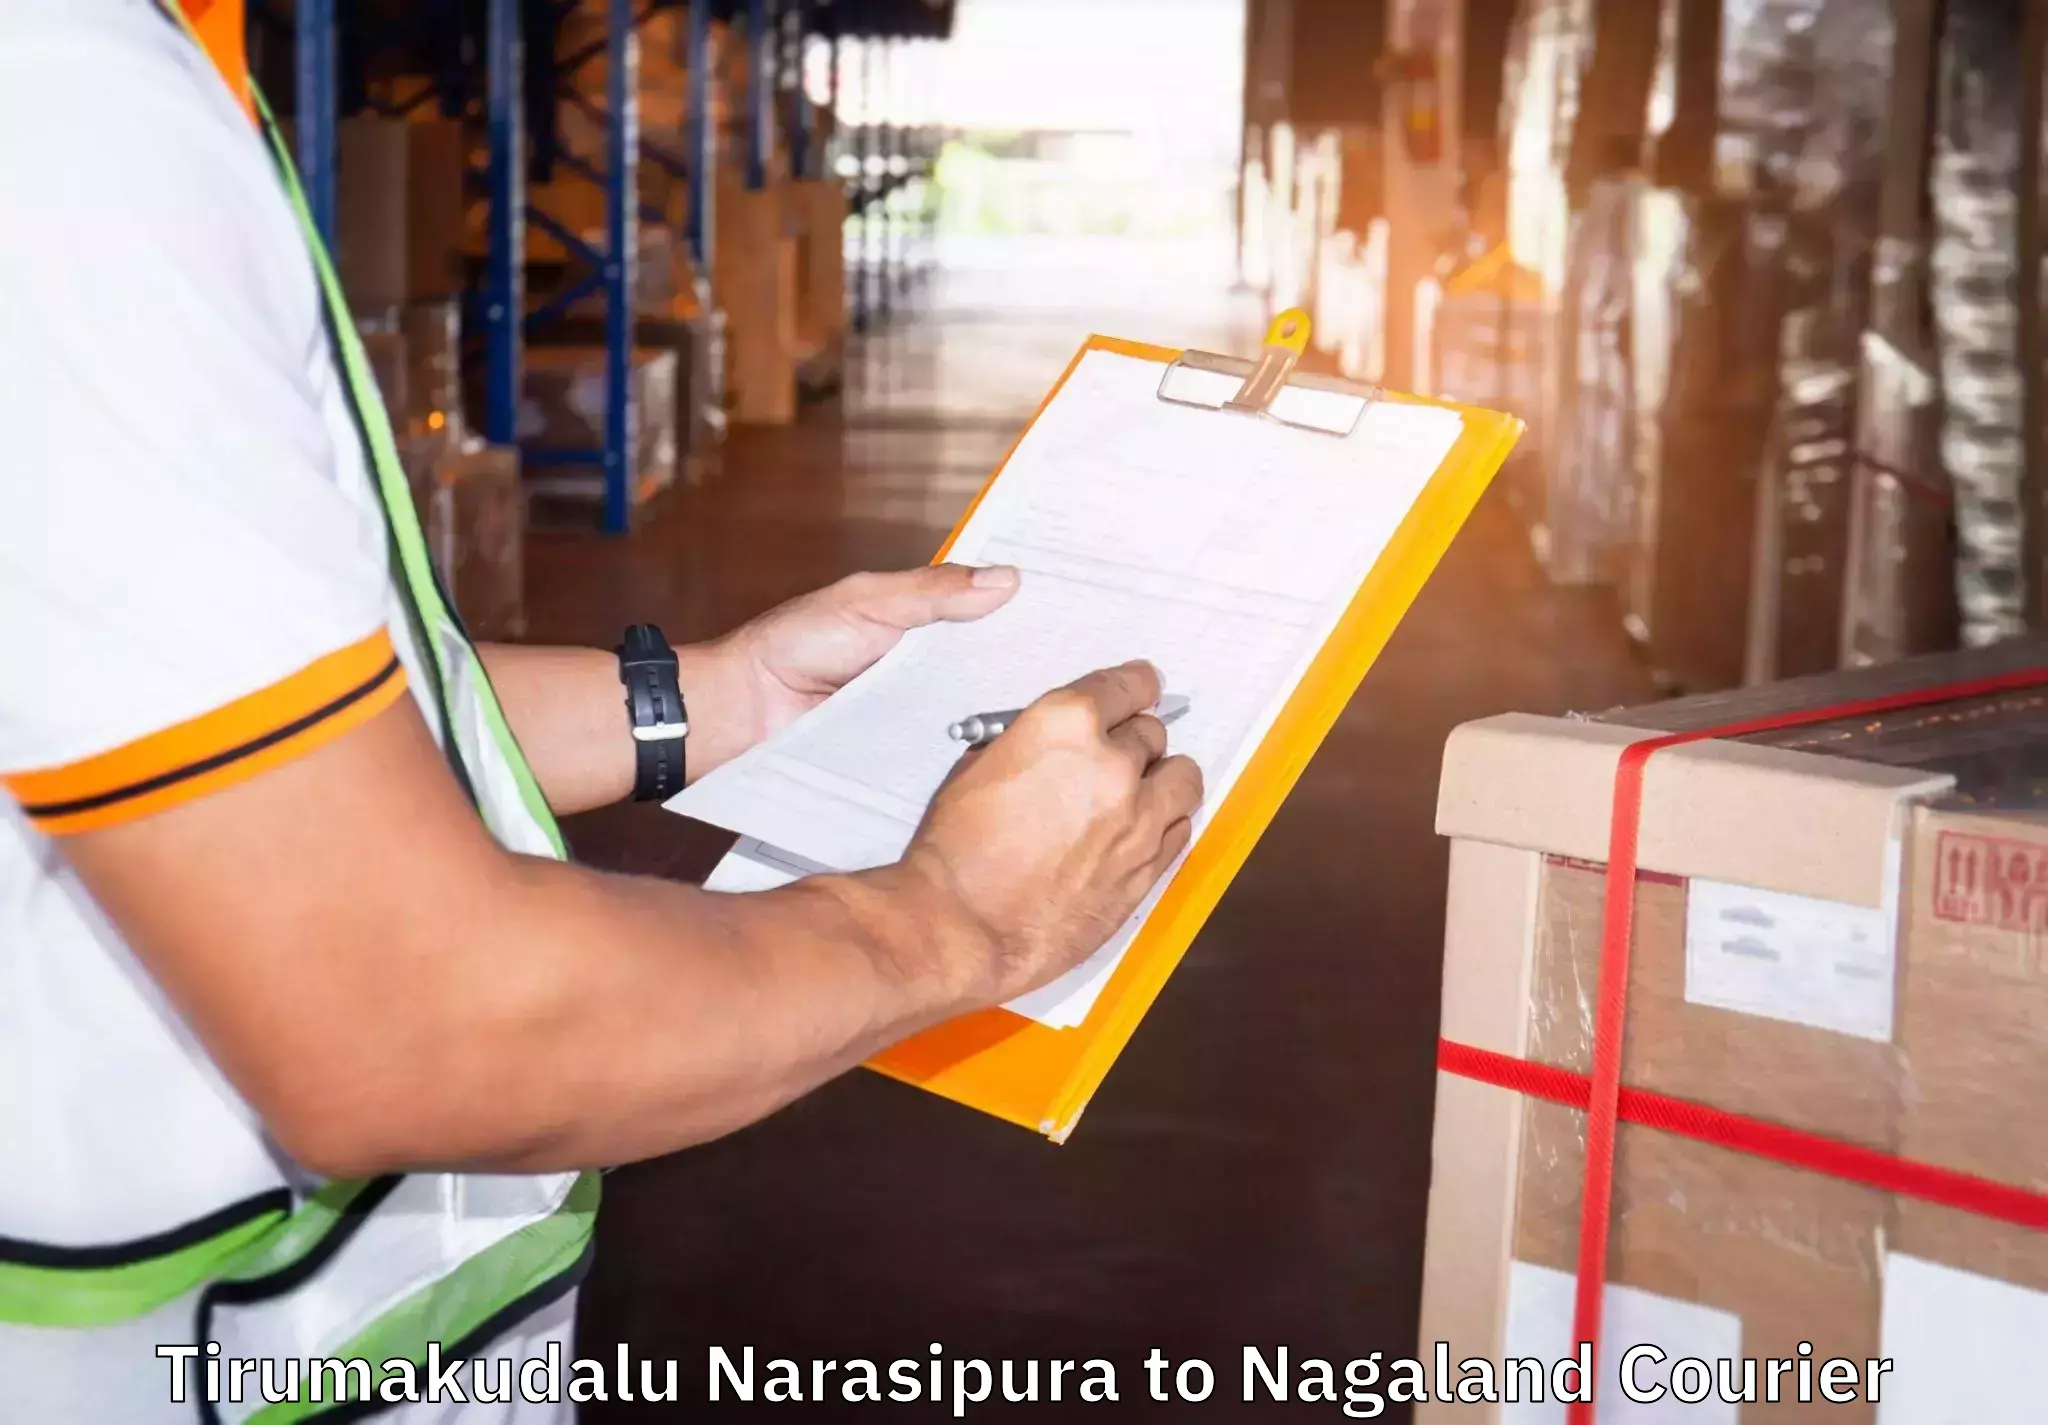 Furniture transport services in Tirumakudalu Narasipura to NIT Nagaland